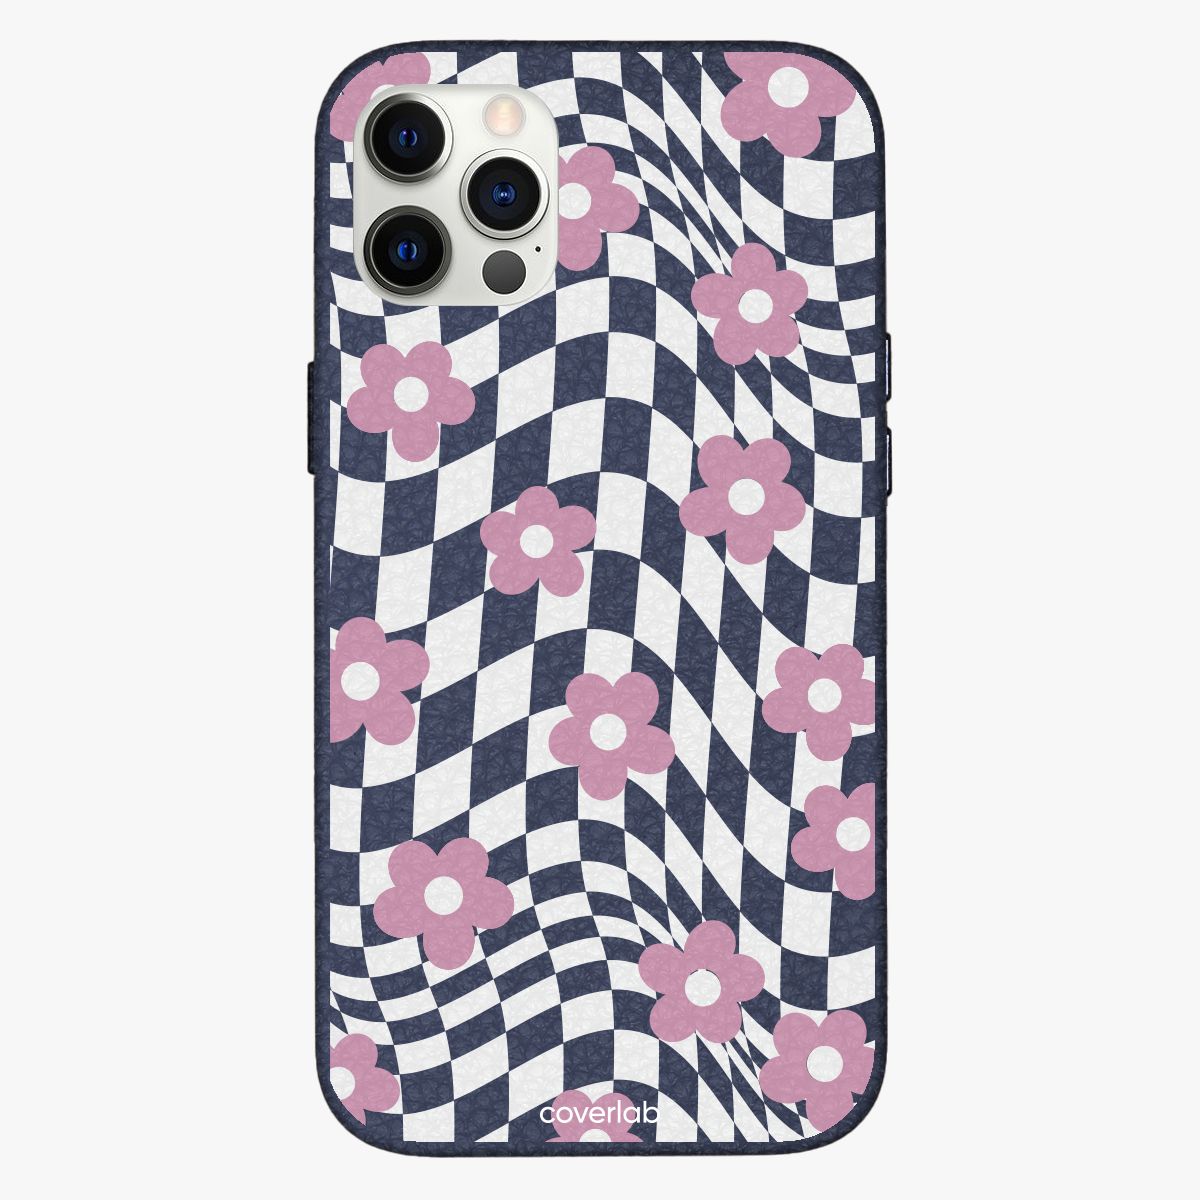 Schach und Blumen personalisierte Leder iPhone Hülle